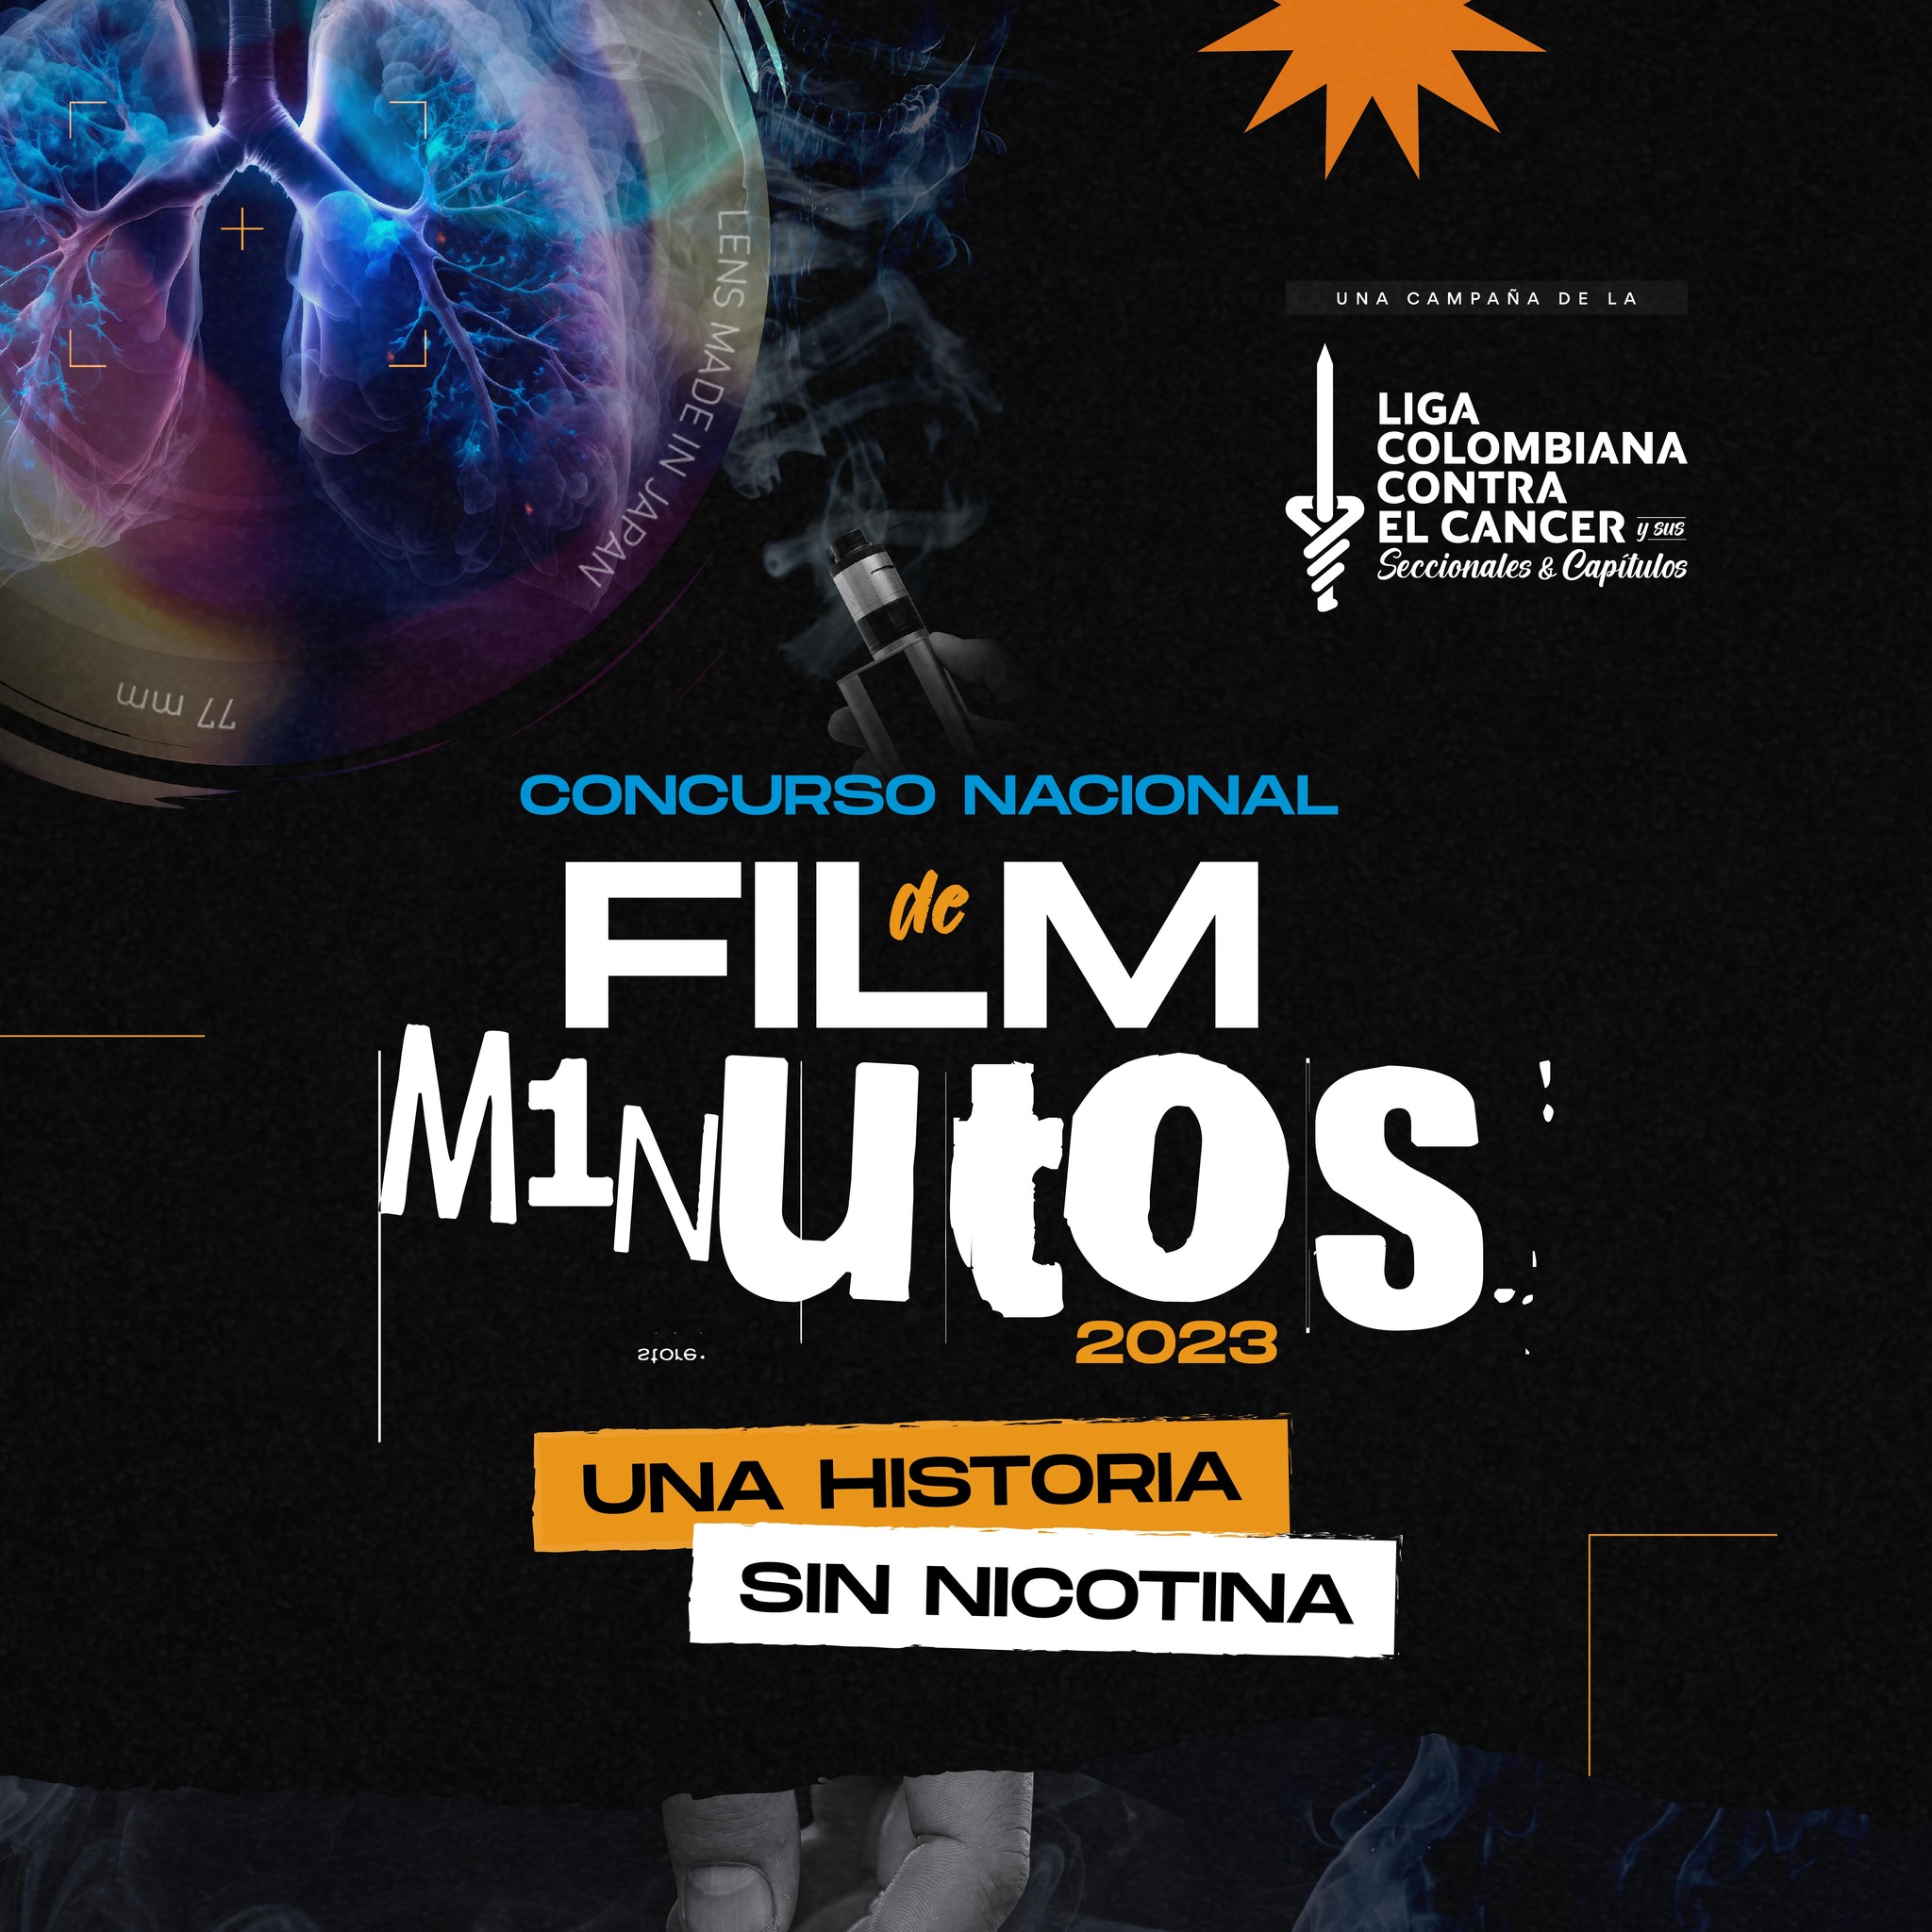 La Liga Colombiana Contra el Cáncer lanza Concurso Nacional de Filminutos ‘Una historia sin nicotina’